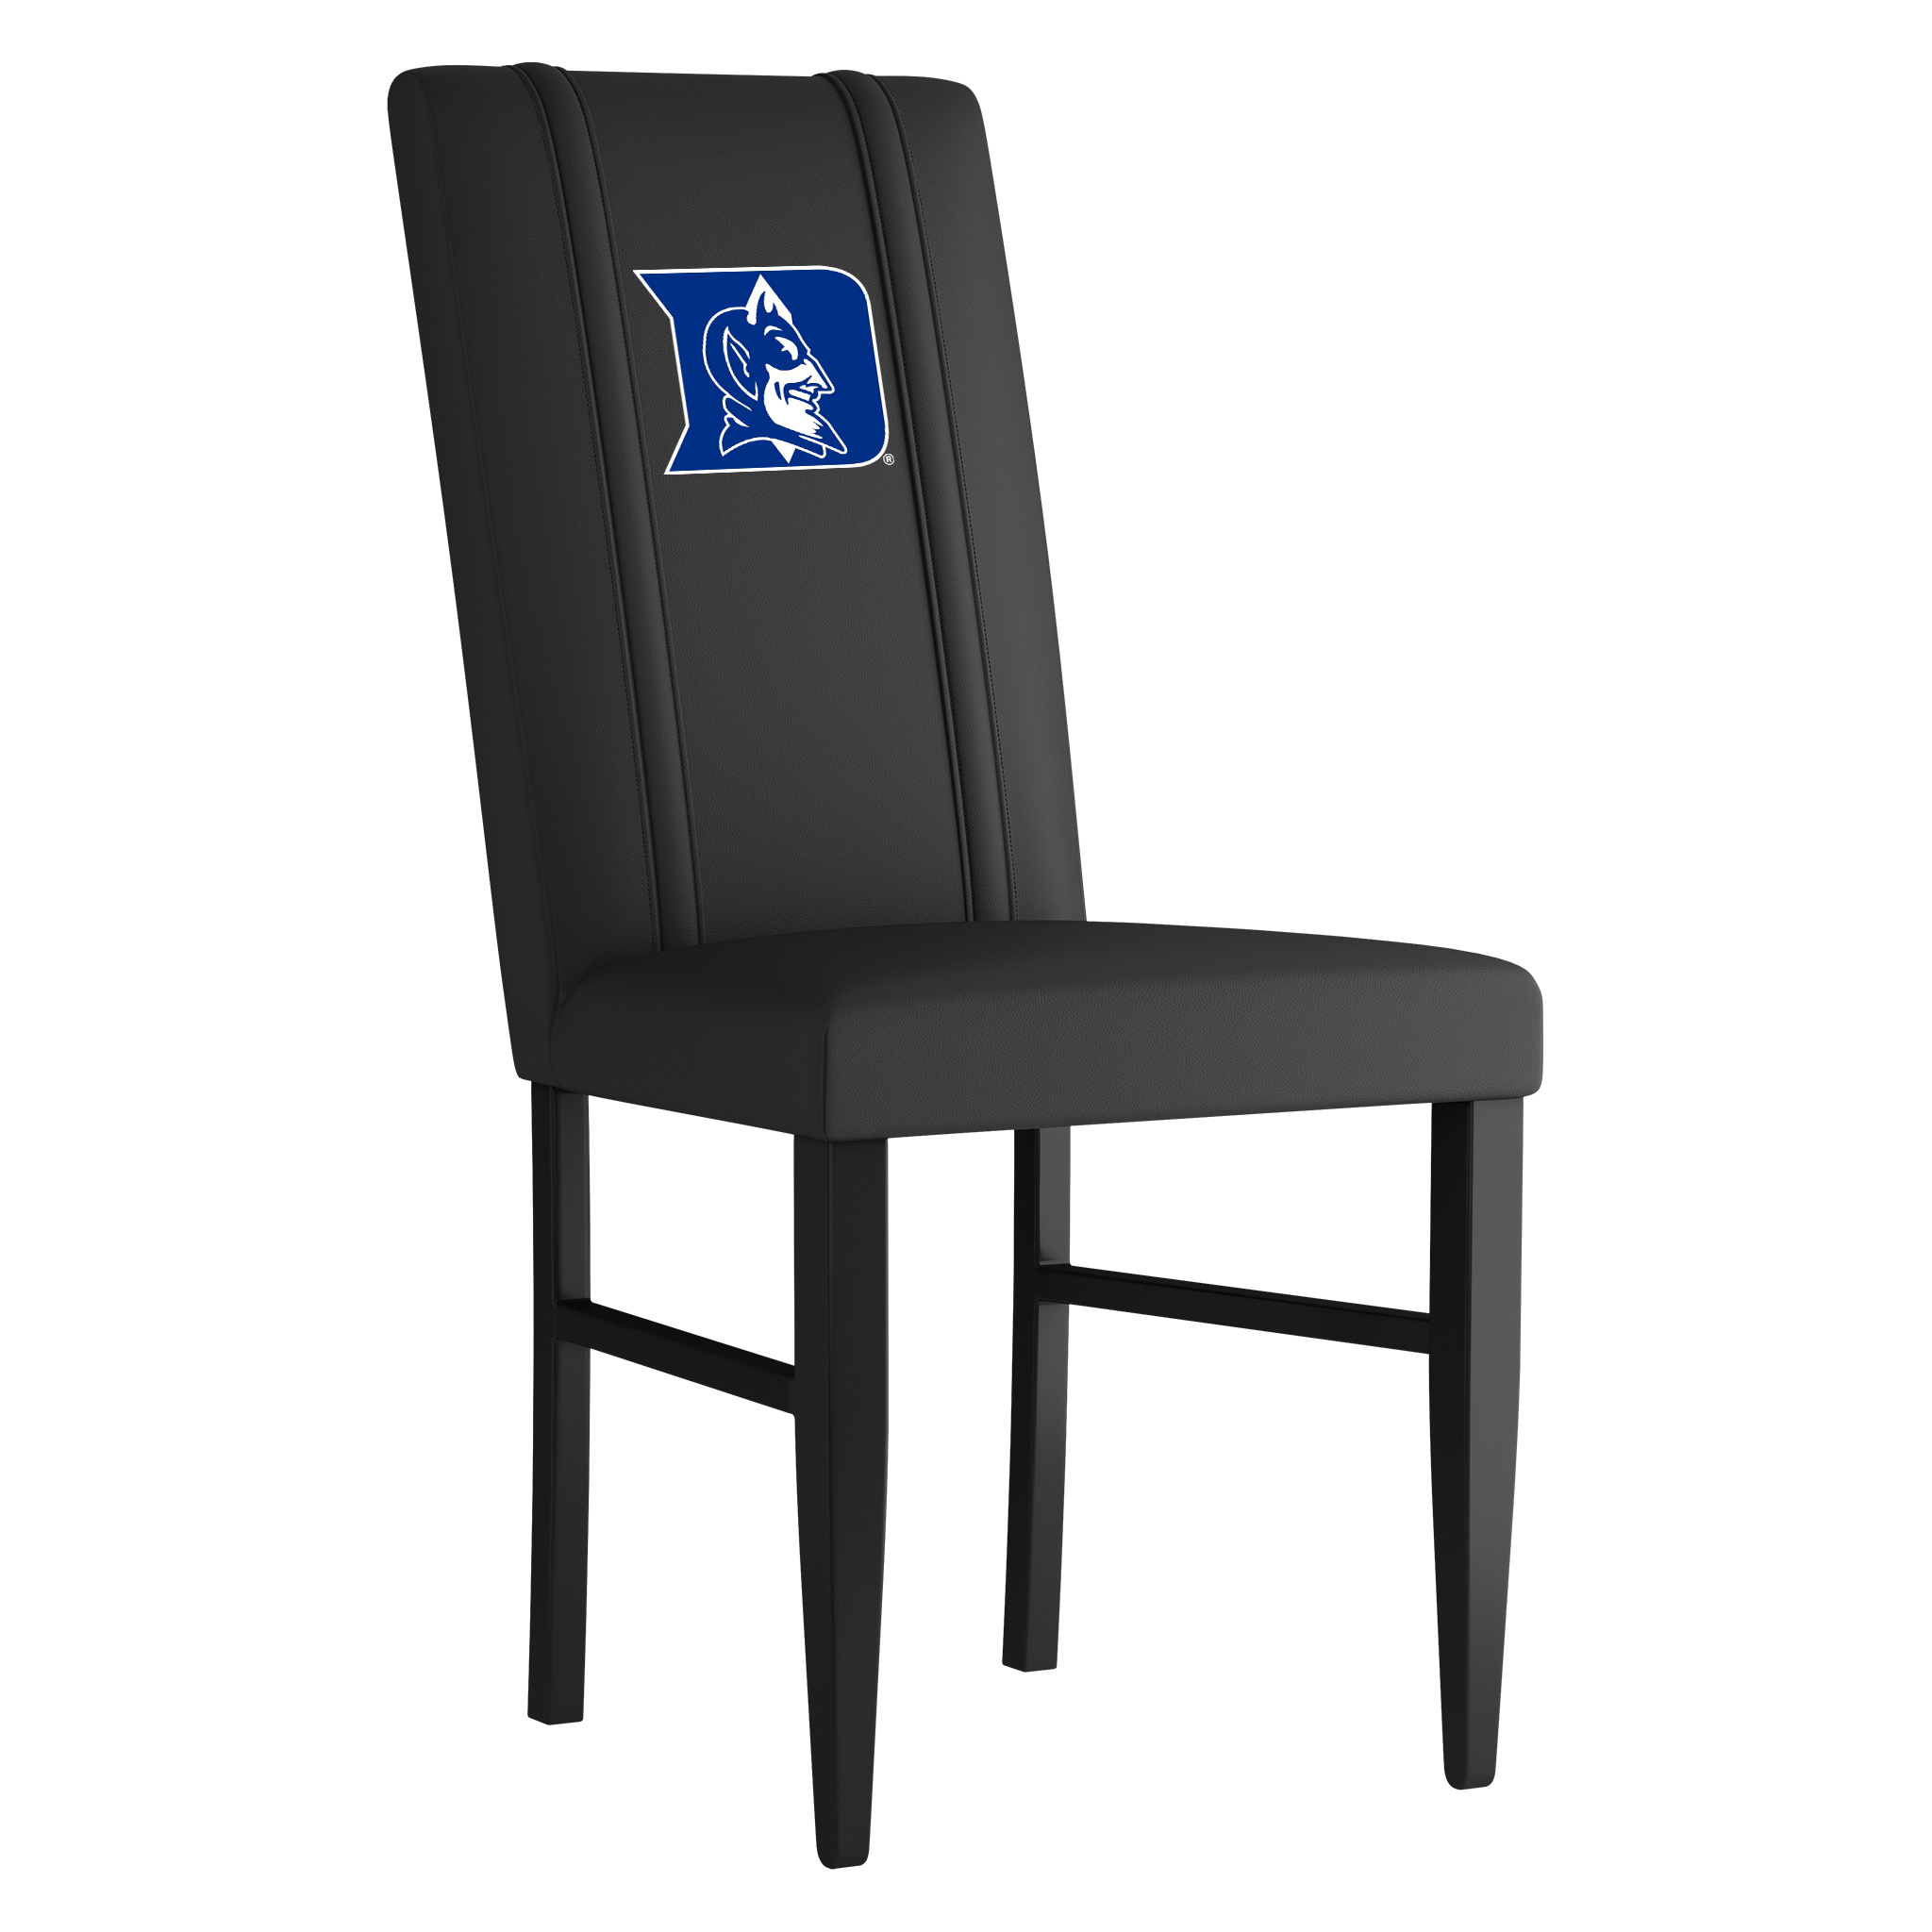 Duke Blue Devils Side Chair 2000 With Duke Blue Devils Logo